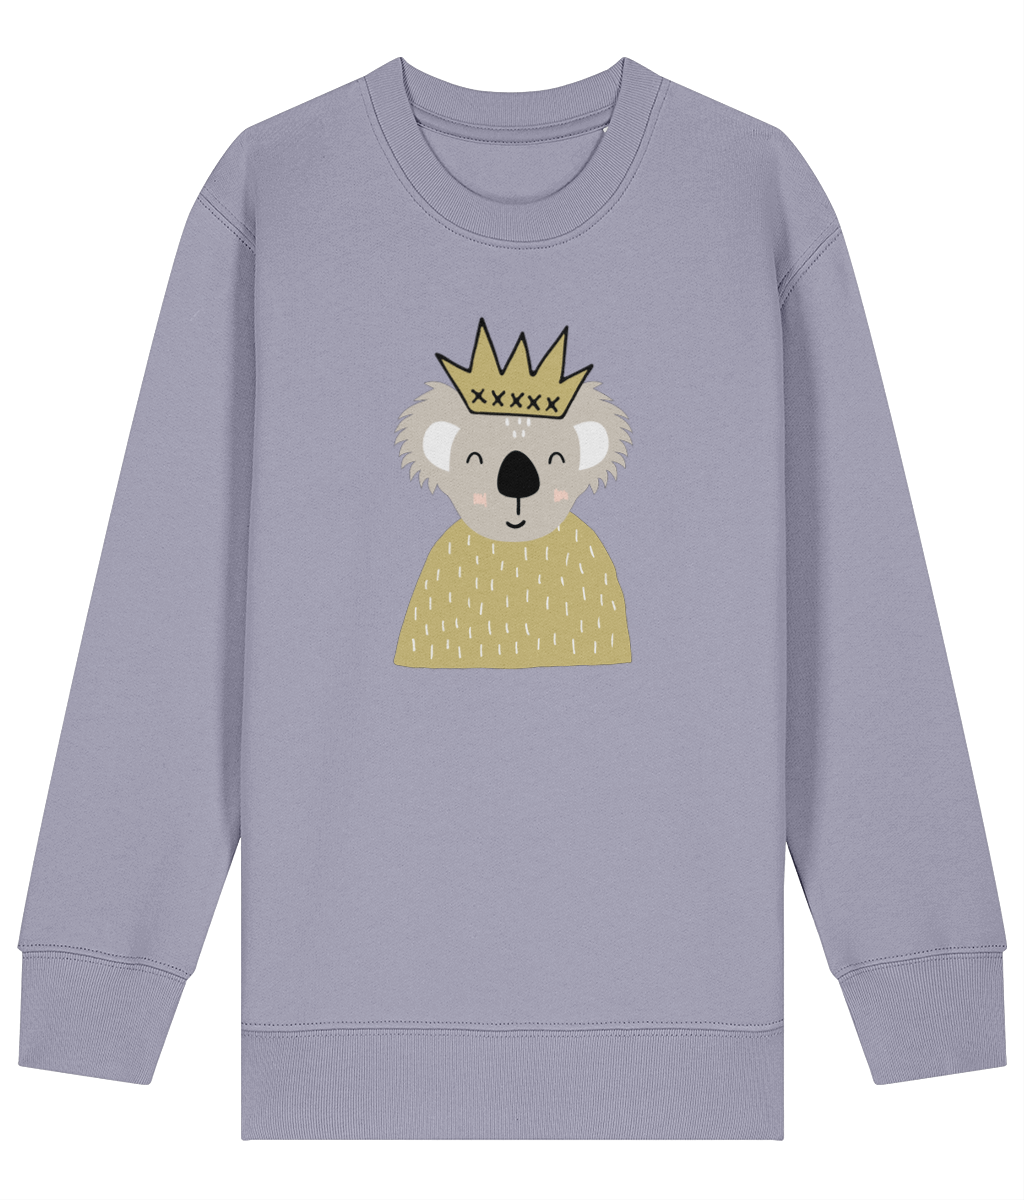 Koala Yellow crown kids sweatshirt - Dottie Koala